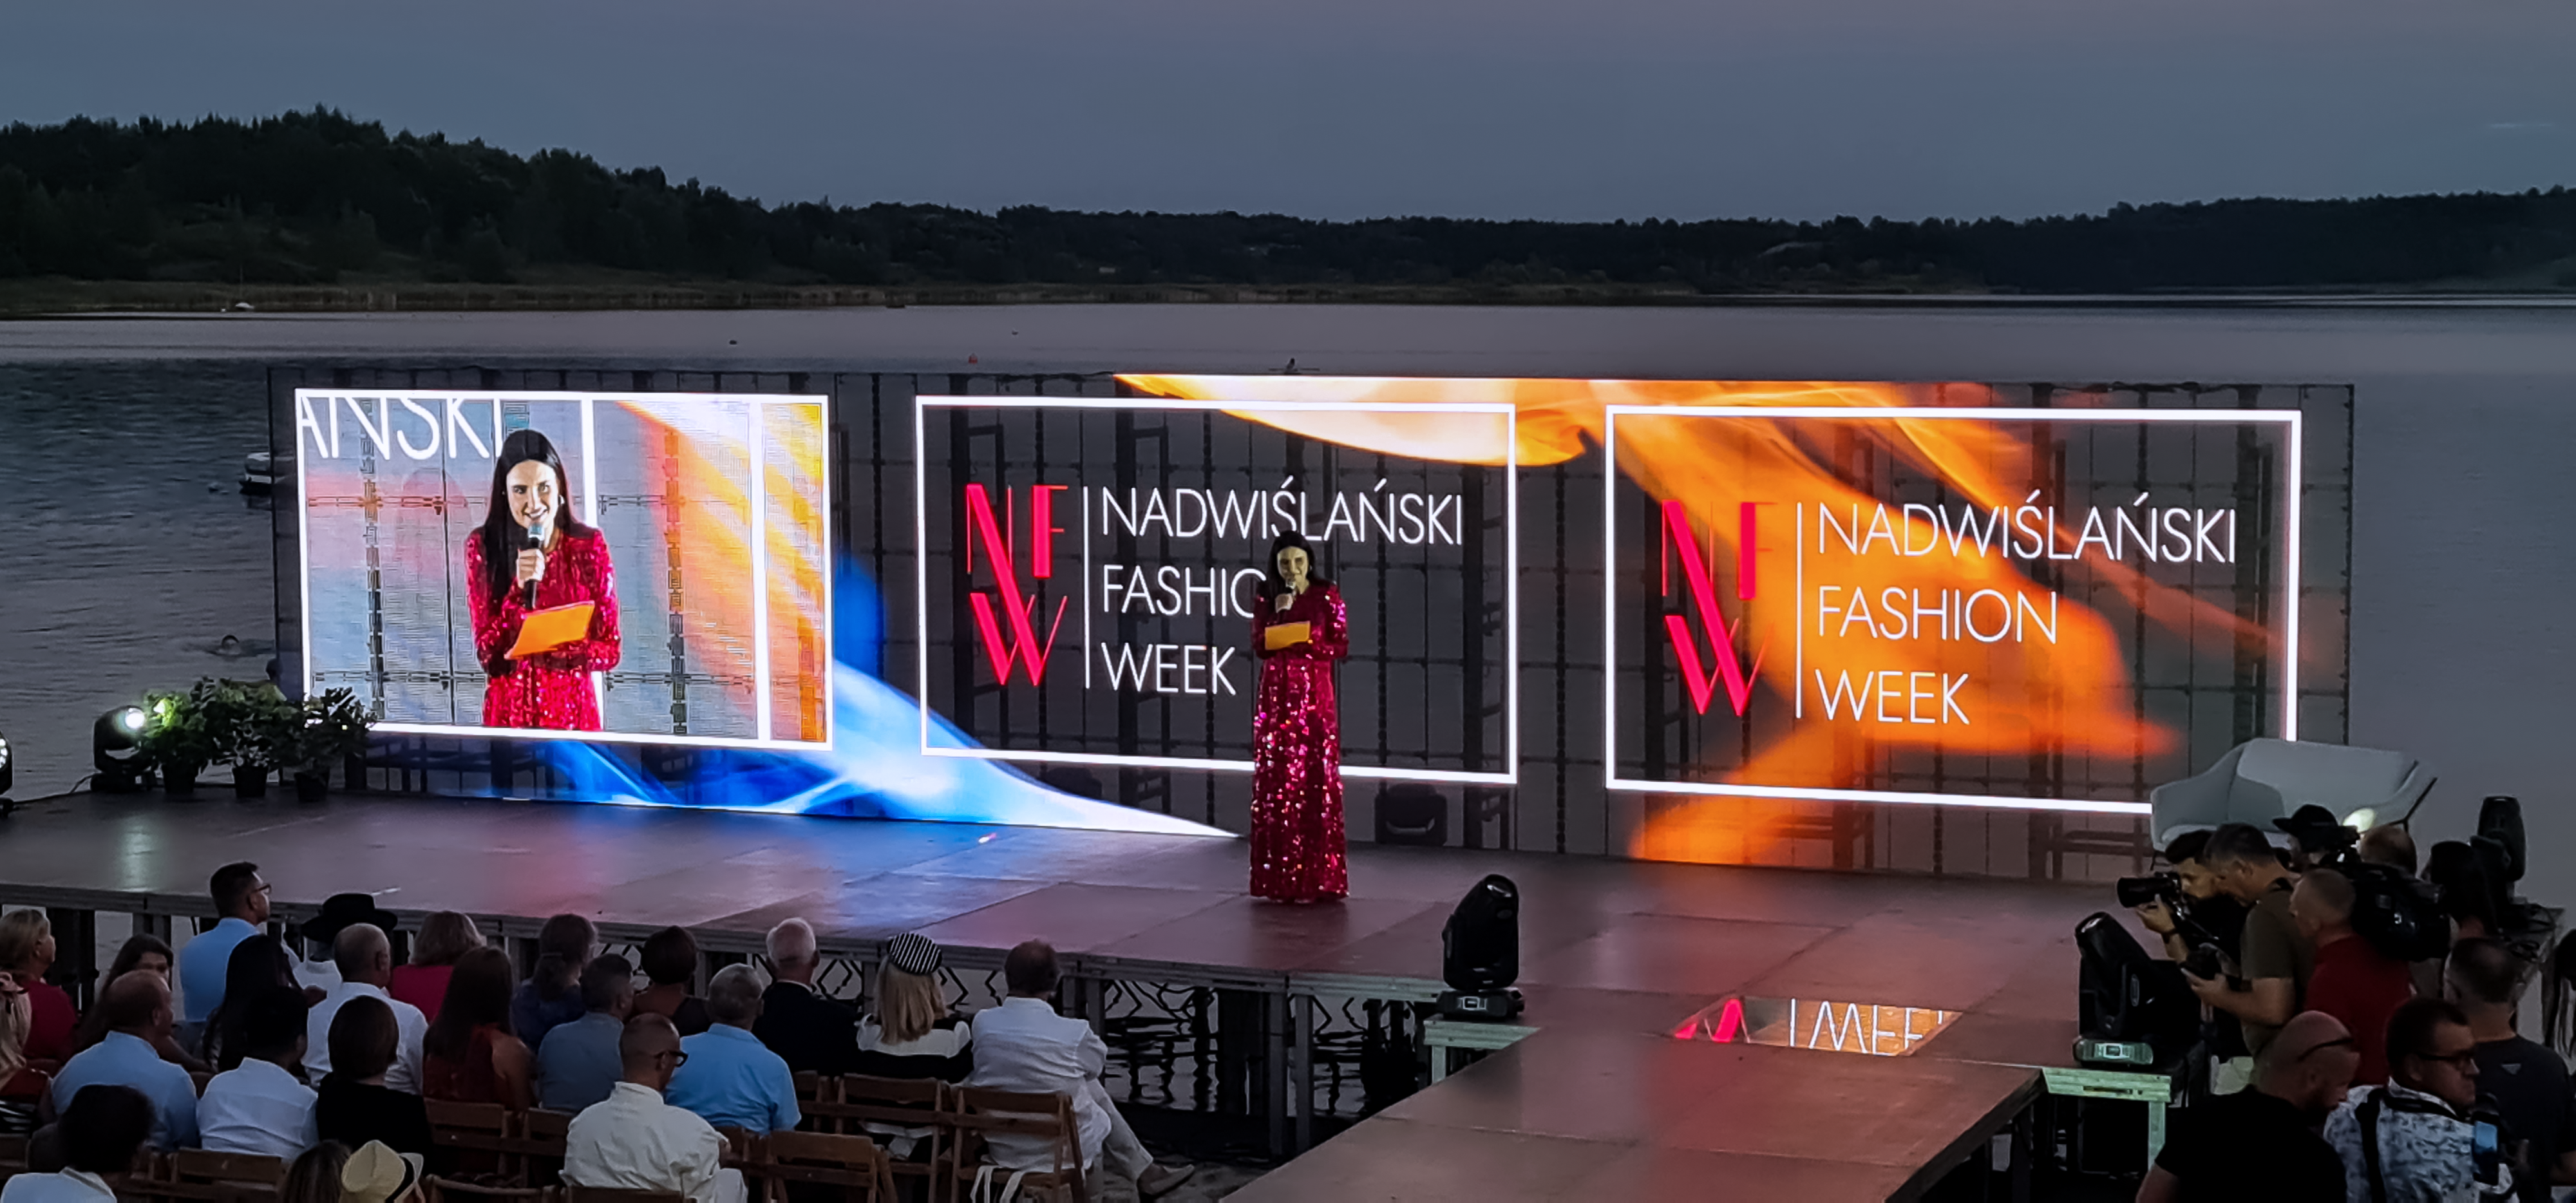 Joanna Horodyńska na scenie ustawionej na tafli jeziora Tarnobrzeskiego, a w tle transparentne ekrany LED reklamujące Nadwiślański Fashion Week